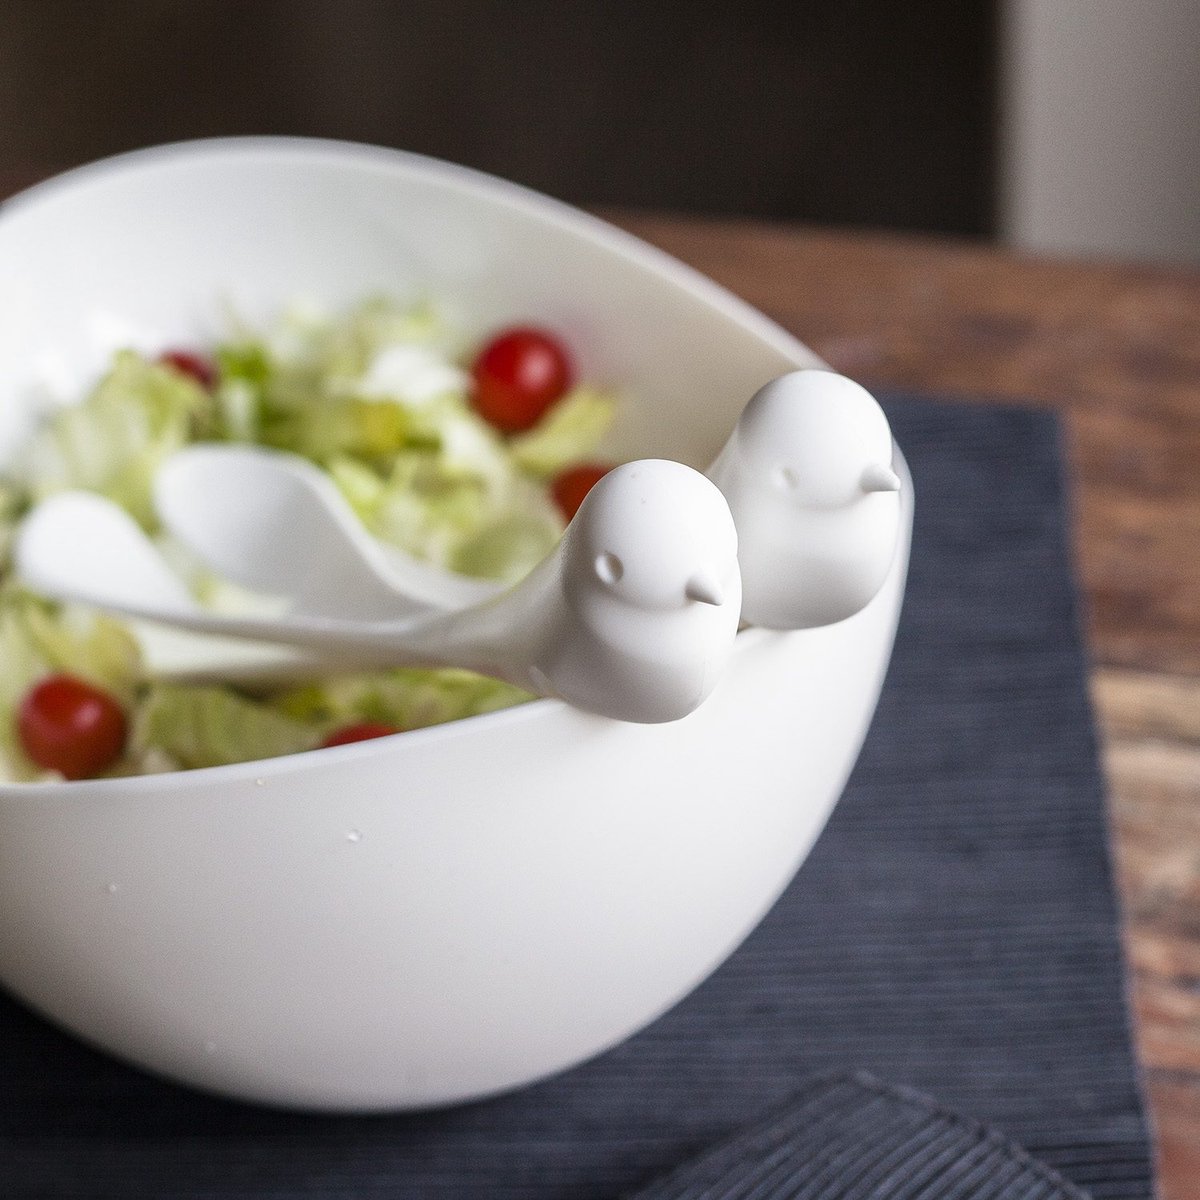 Qualy - Slabak Met Vogeltjes Bestek - Sparrow Salad Bowl & cutlery - Wit - Qualy / New Arriva Co.,Ltd.